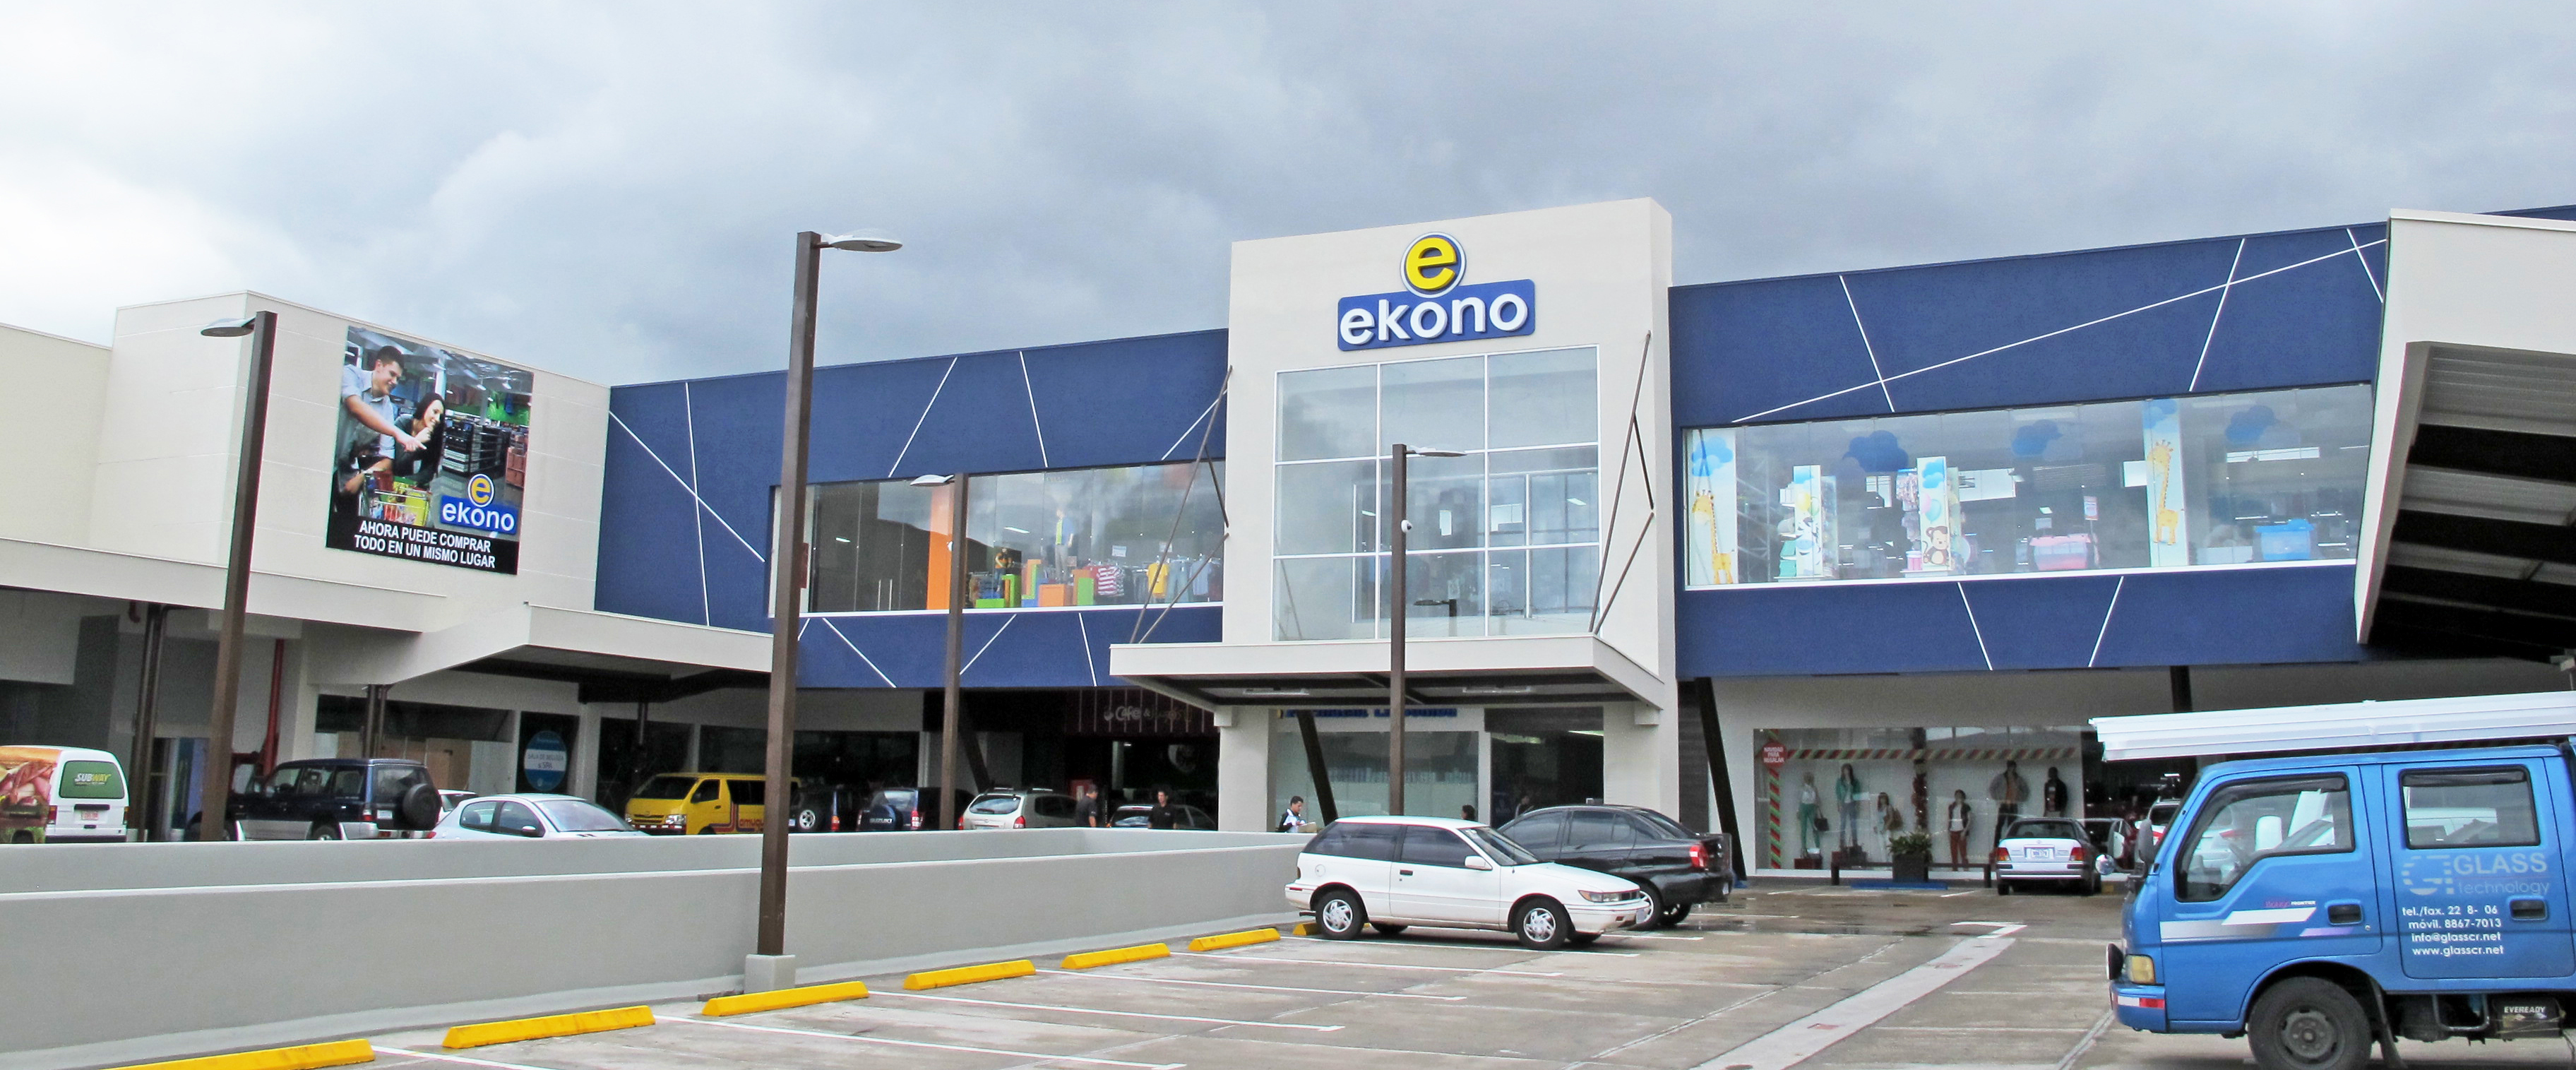 Tiendas Ekono inaugura farmacias La Bomba en cinco de sus tiendas